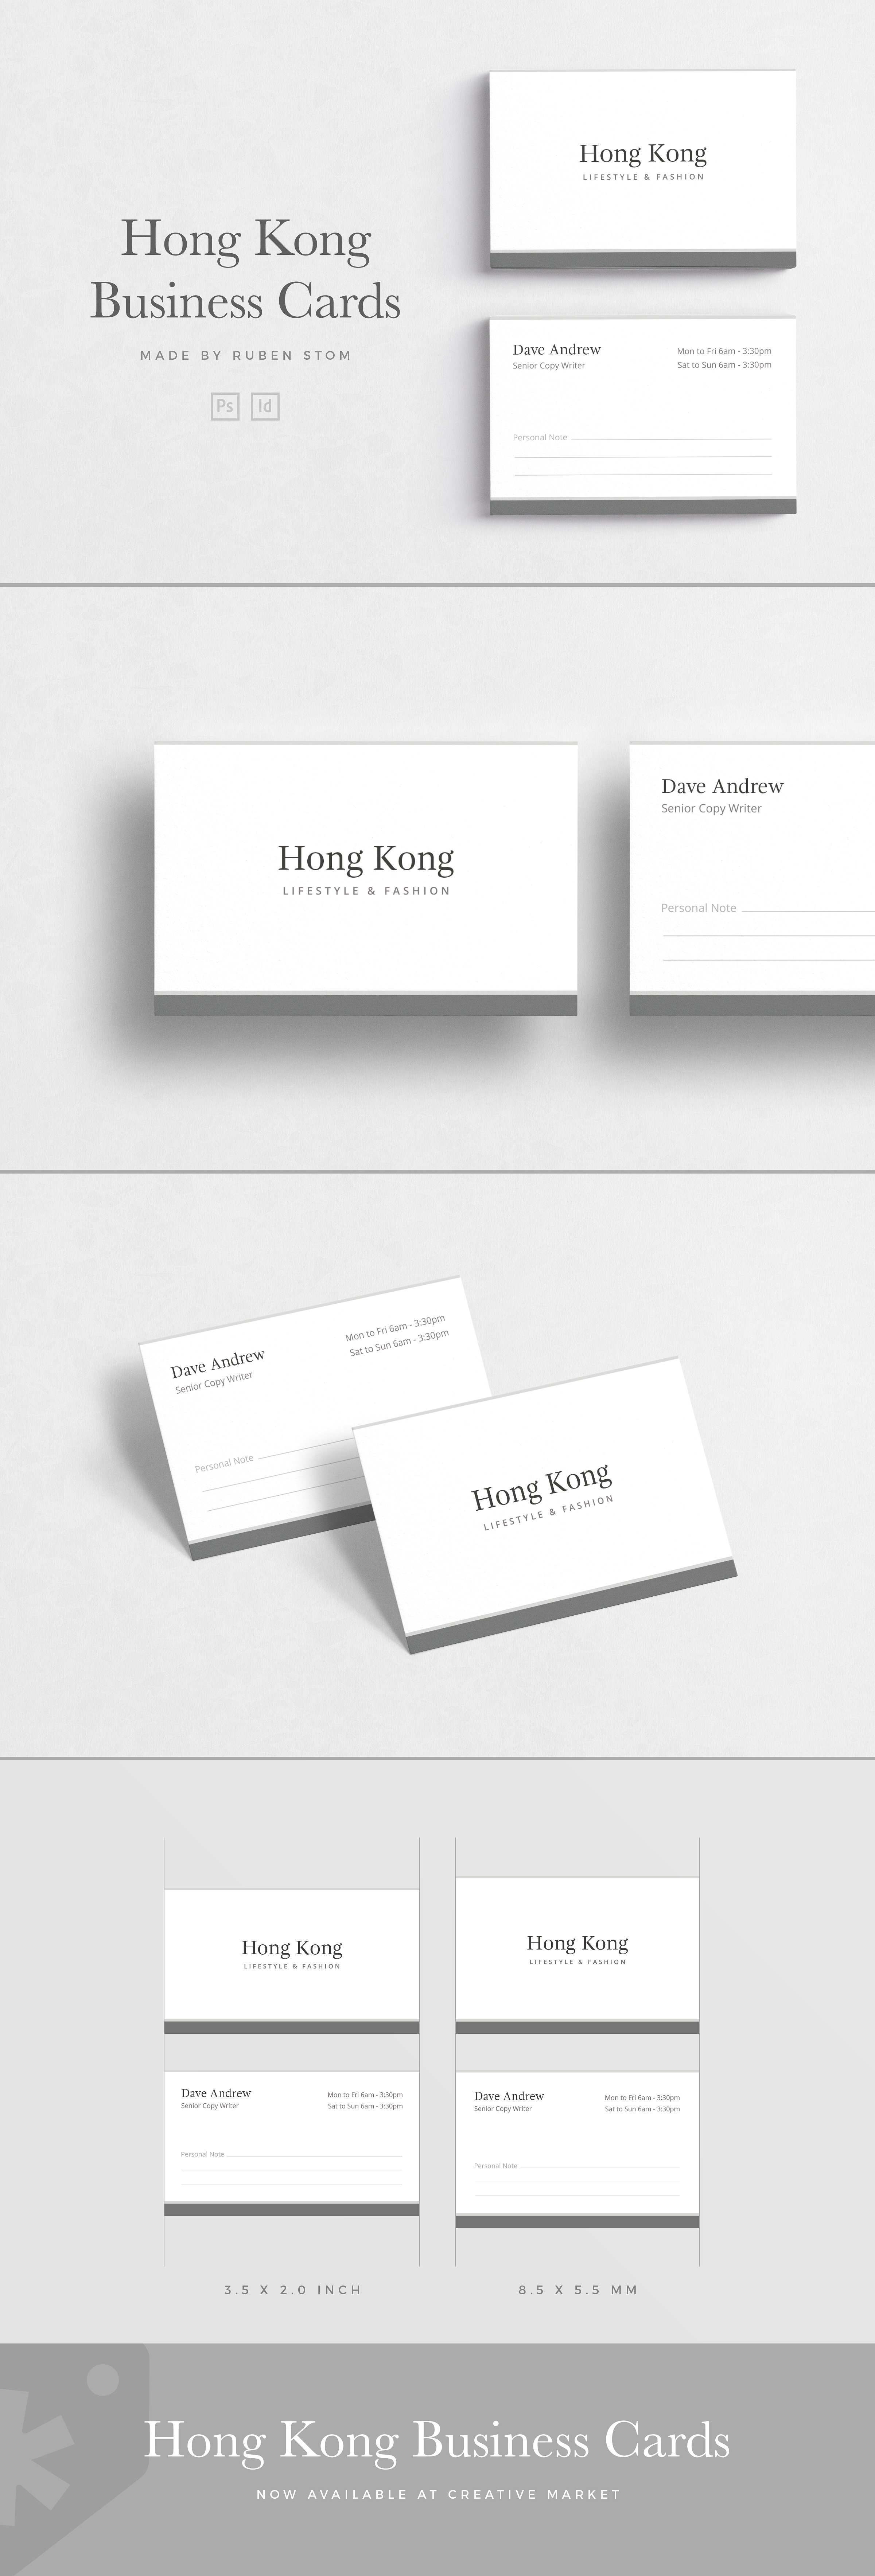 极简主义企业名片设计模板4 Hong Kong Business Card插图